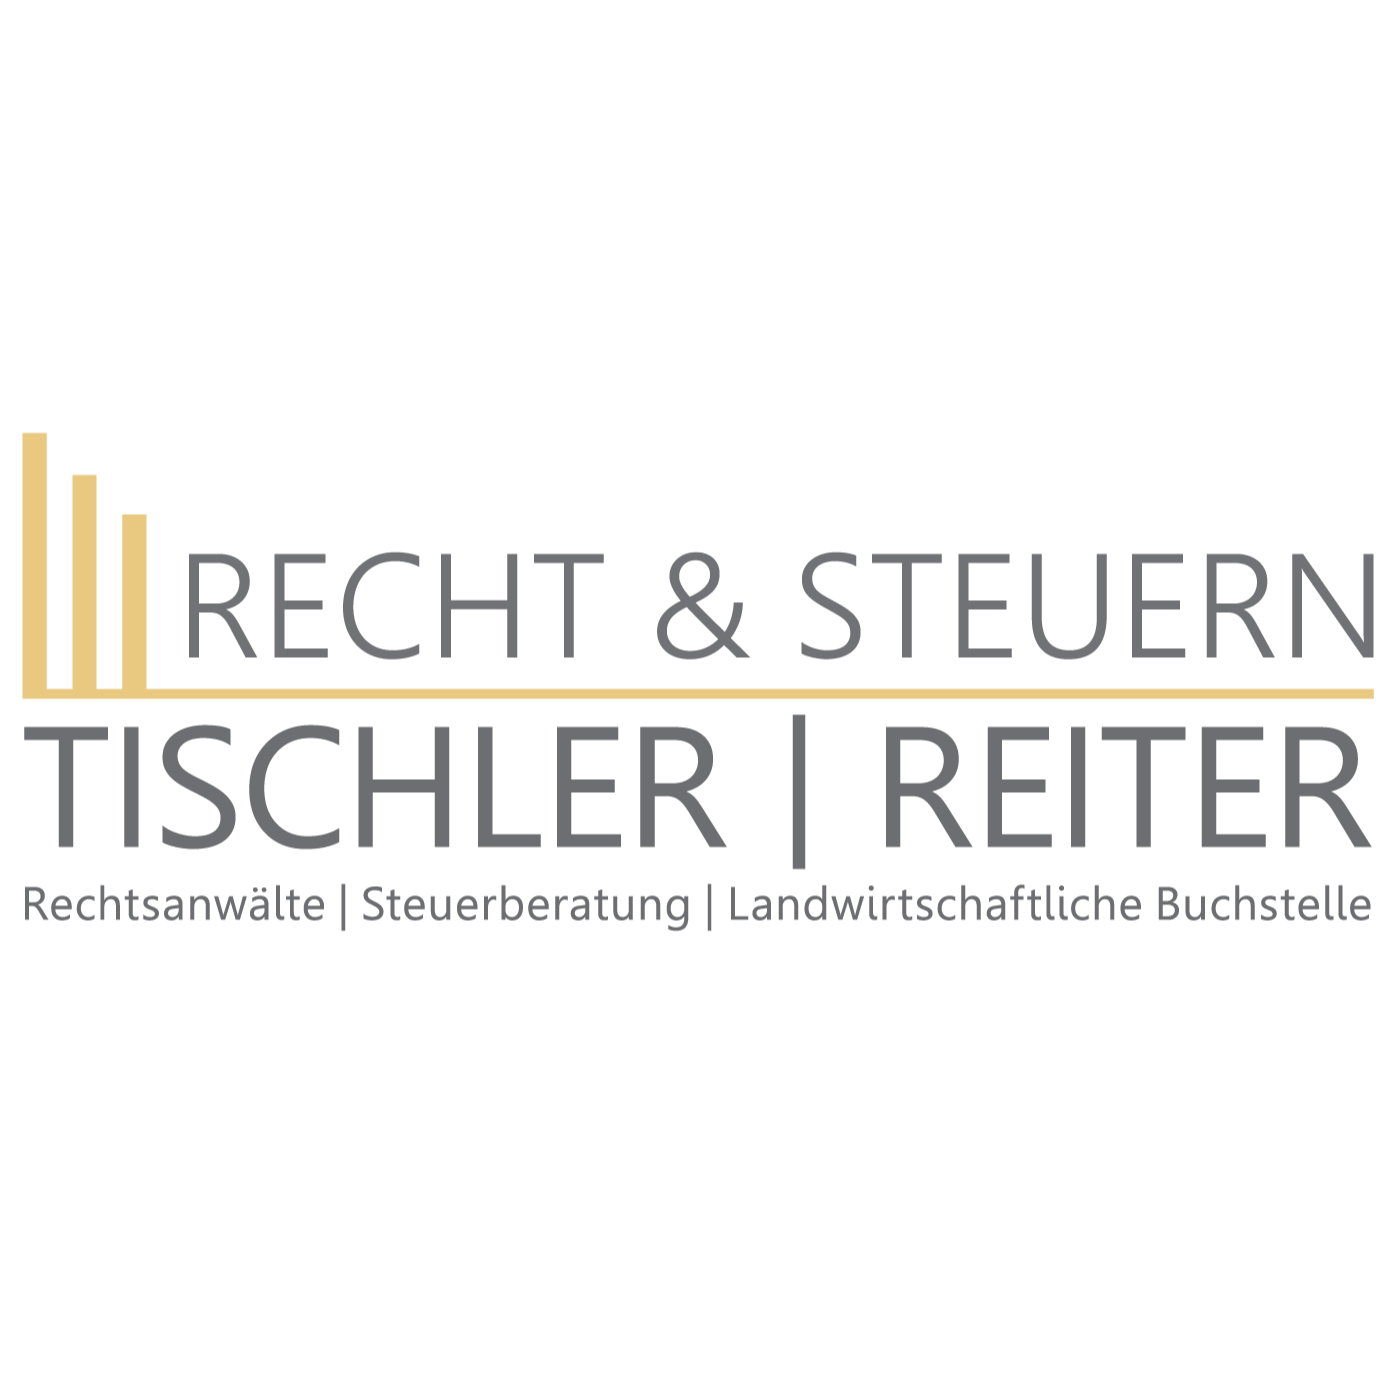 Recht & Steuern Tischler - Reiter Logo